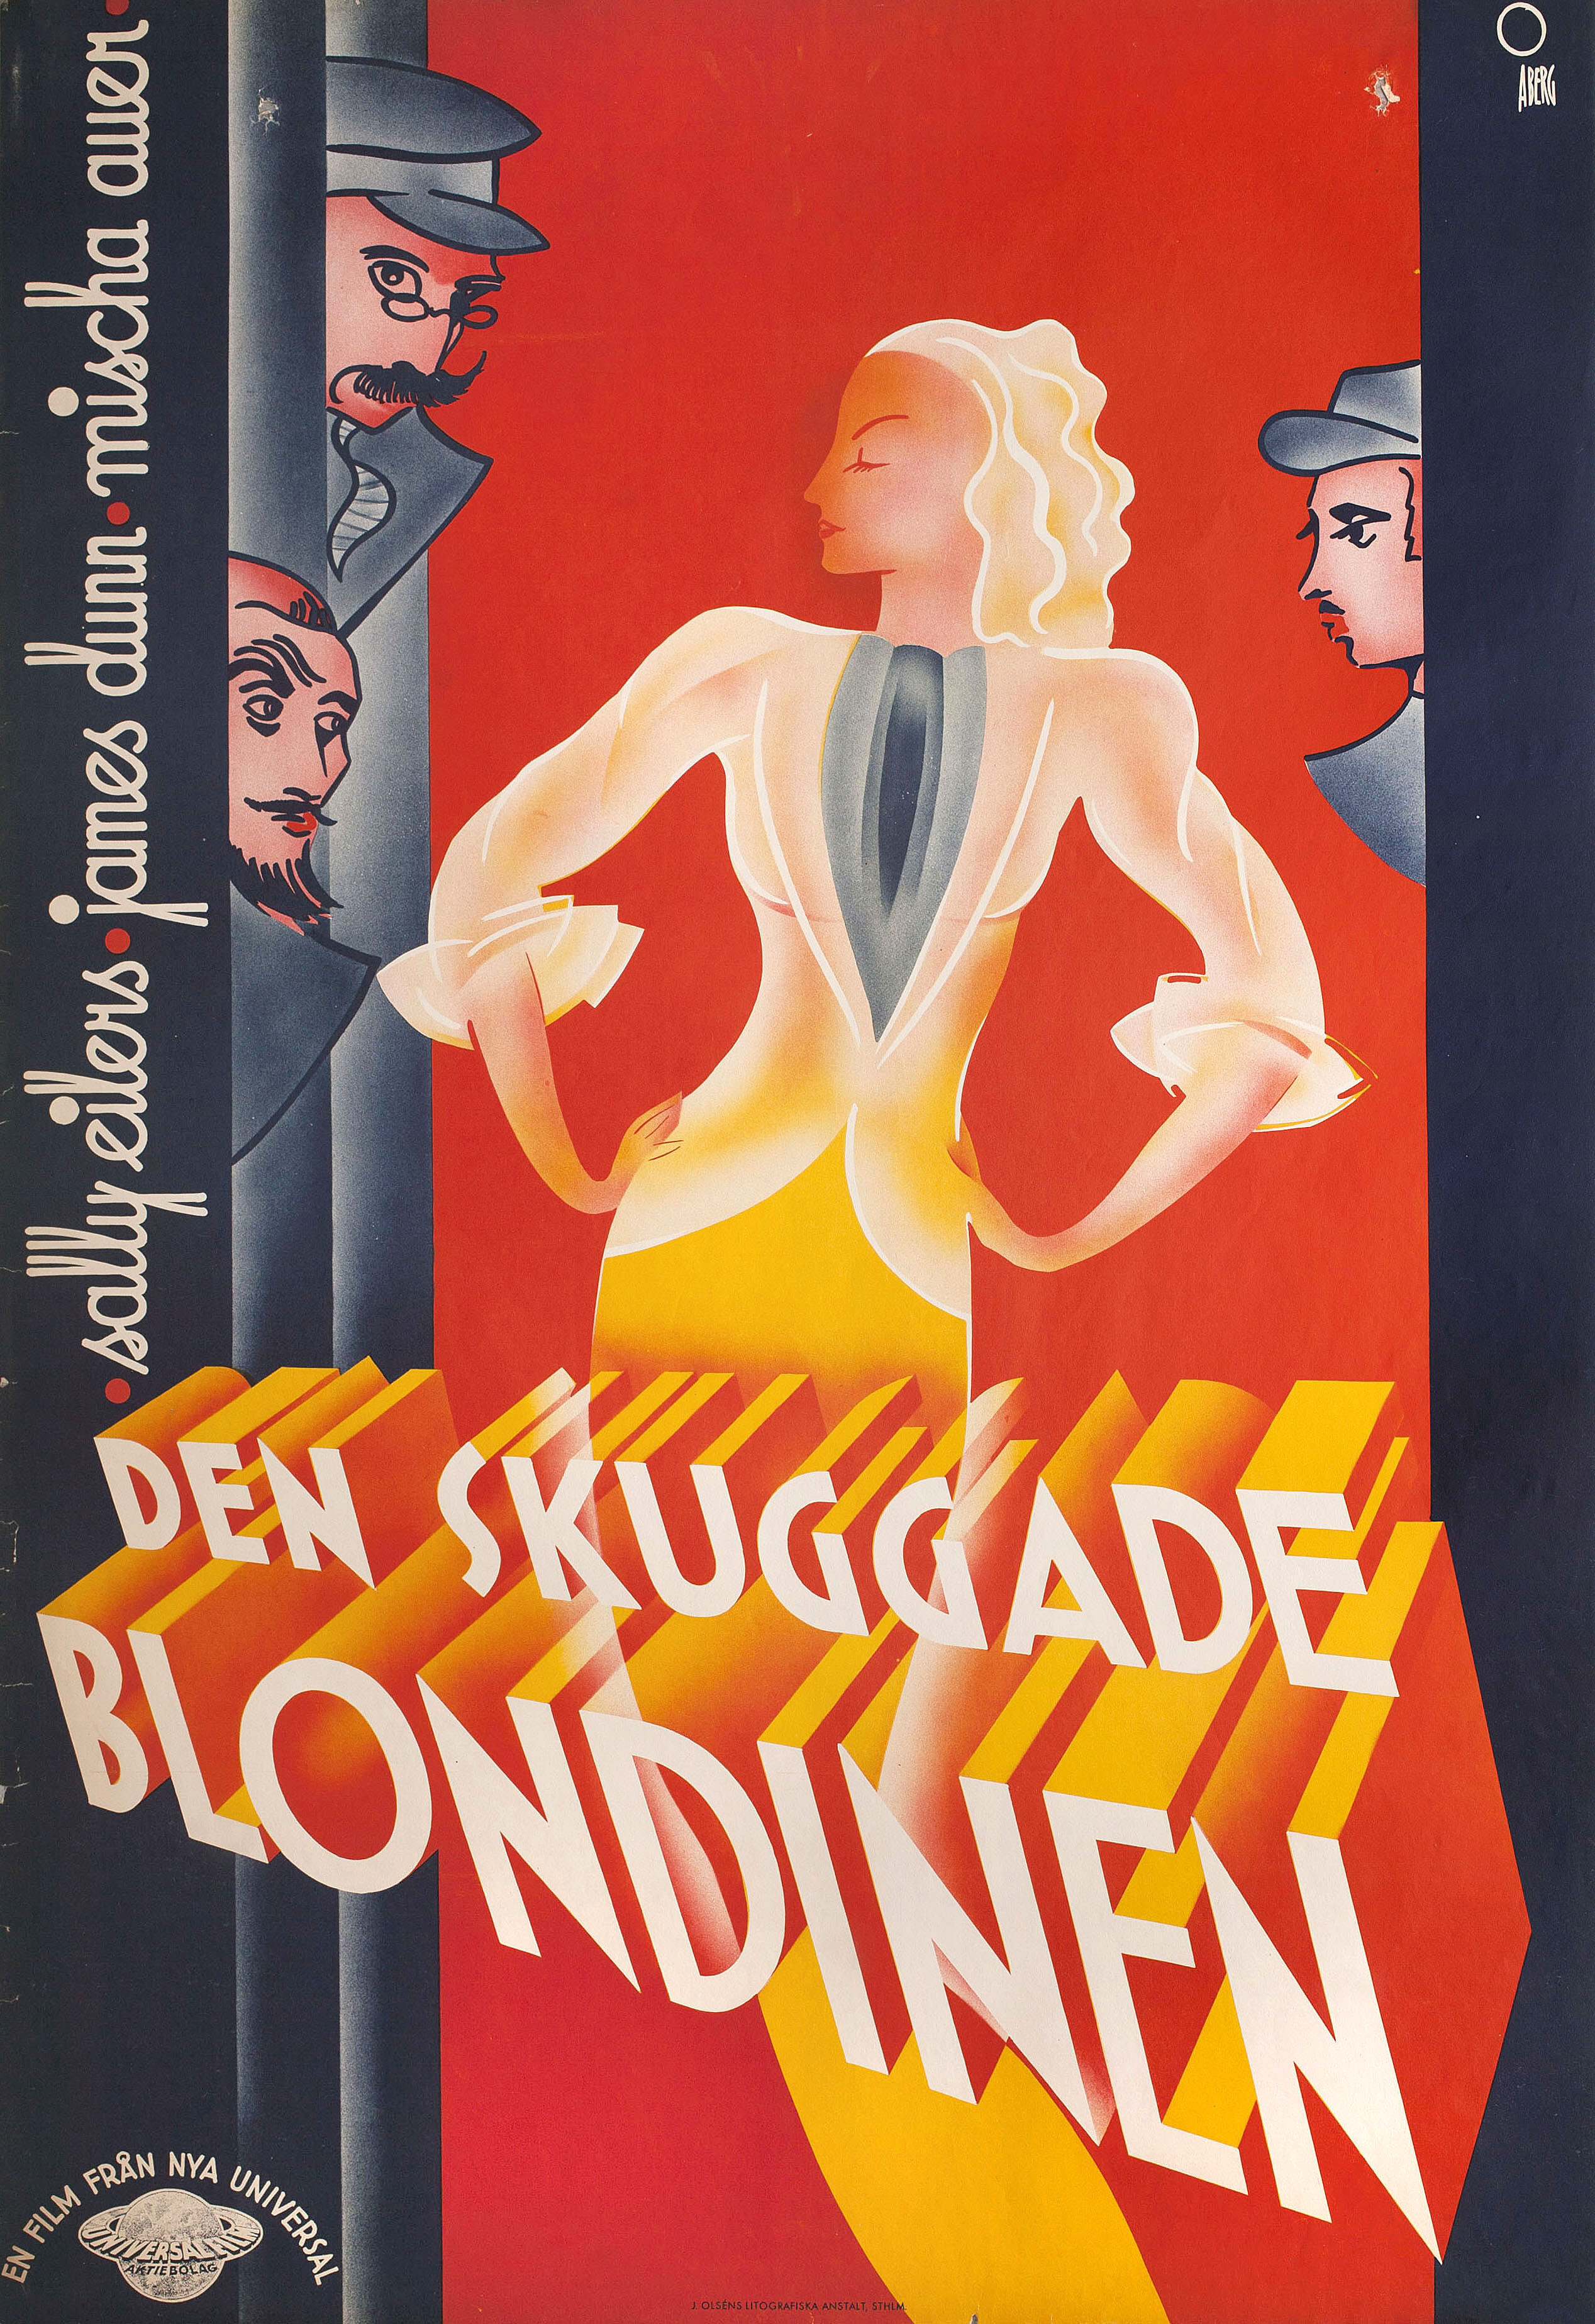 У нас есть свои моменты (We Have Our Moments, 1937), режиссёр Альфред Л. Веркер, постер к фильму в стиле ар-деко (Швеция, 1937 год), автор Госта Абе